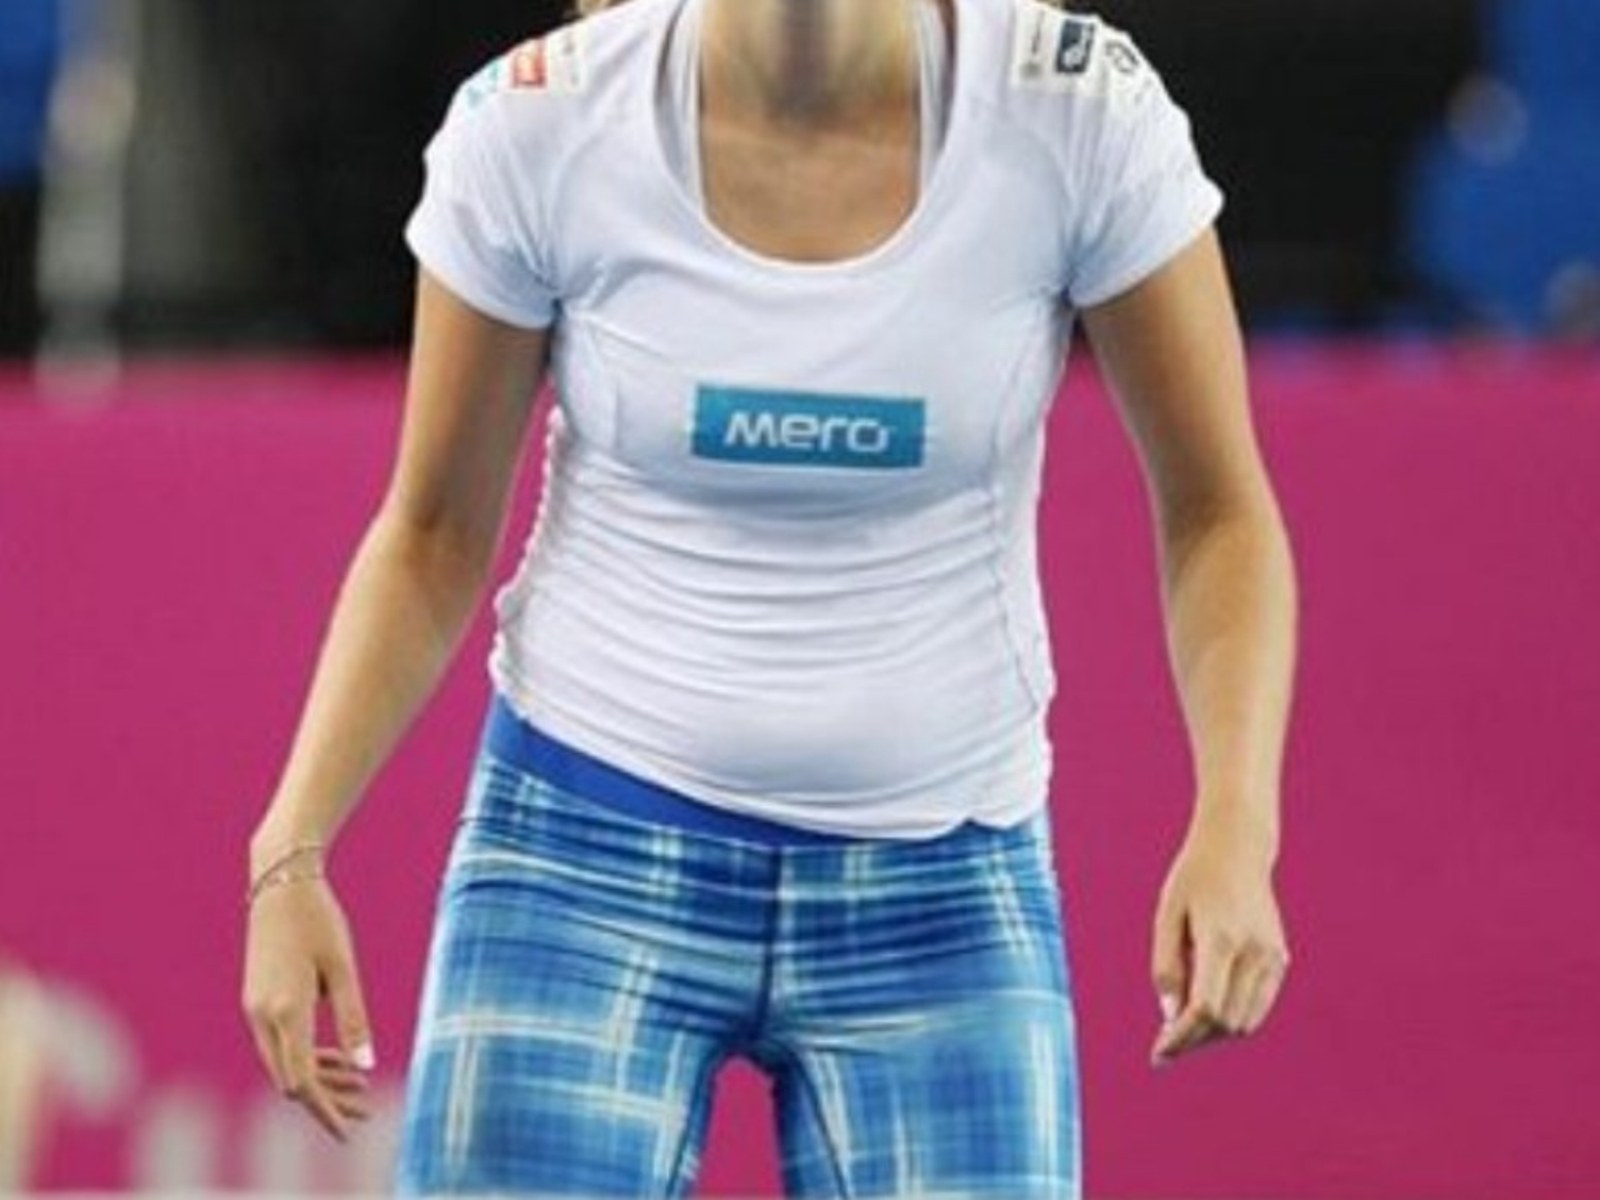 Petra Kvitova crying - Tennis Photo (29701228) - Fanpop 